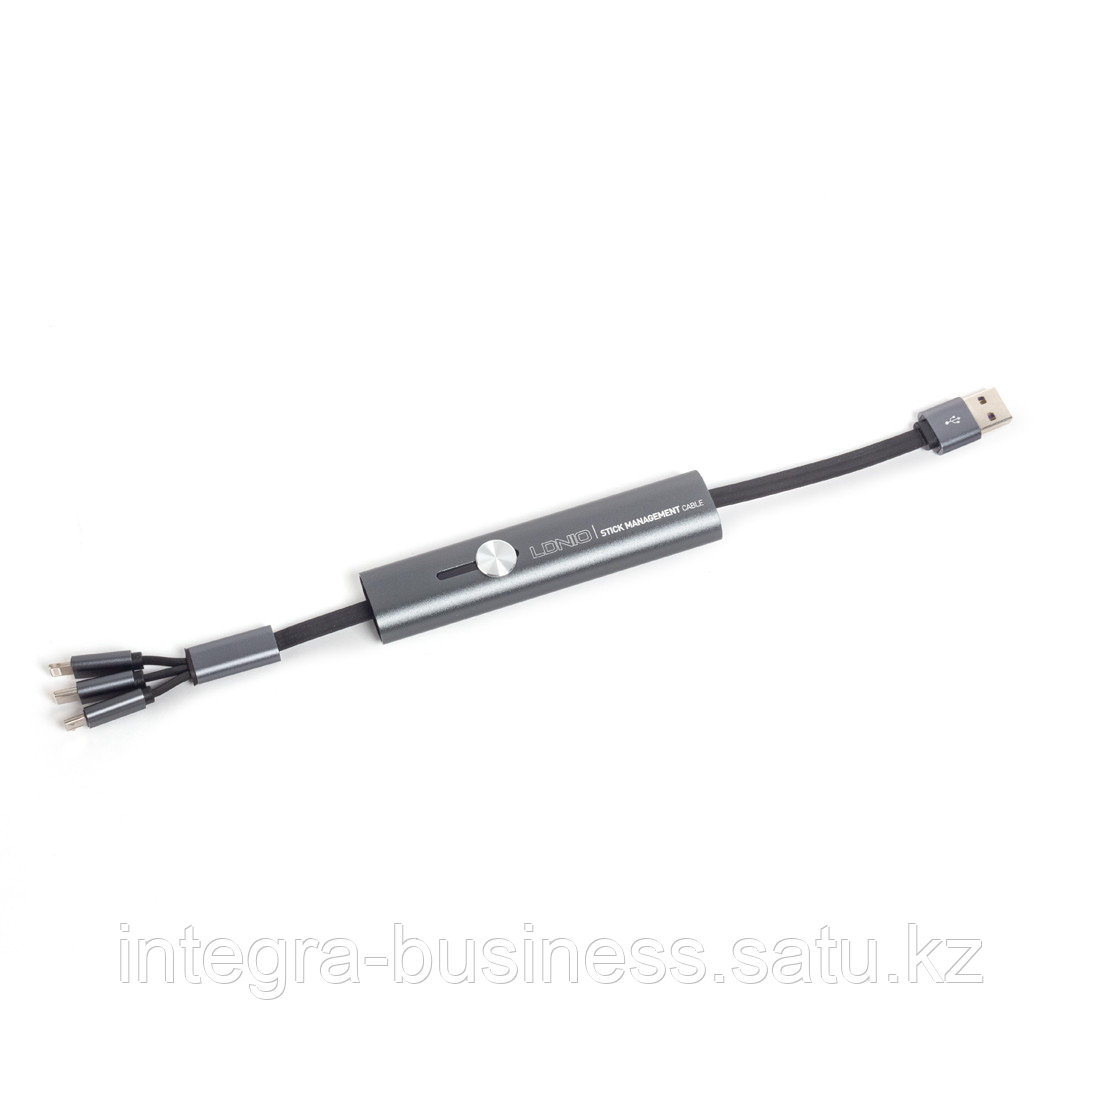 Интерфейсный кабель LDNIO 3 in 1 cable LC99 30cm Серый, фото 1